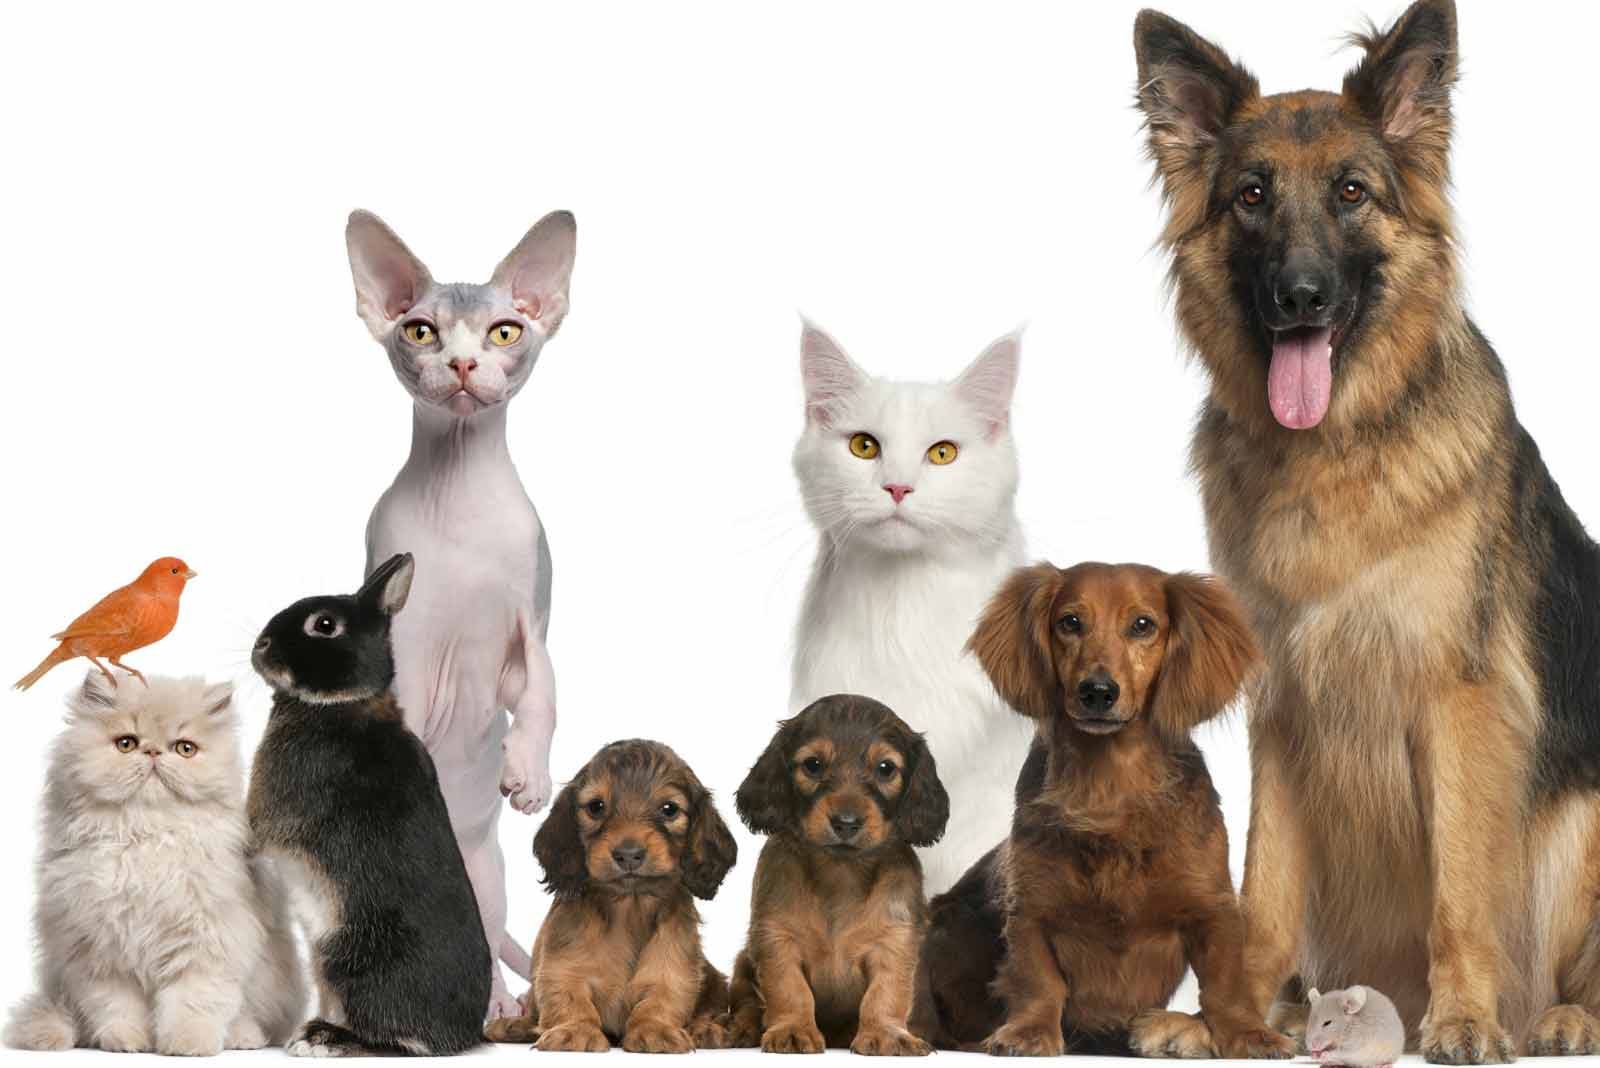 Онлайн ветеринарная аптека VetPreparaty: все что нужно для здоровья ваших животных